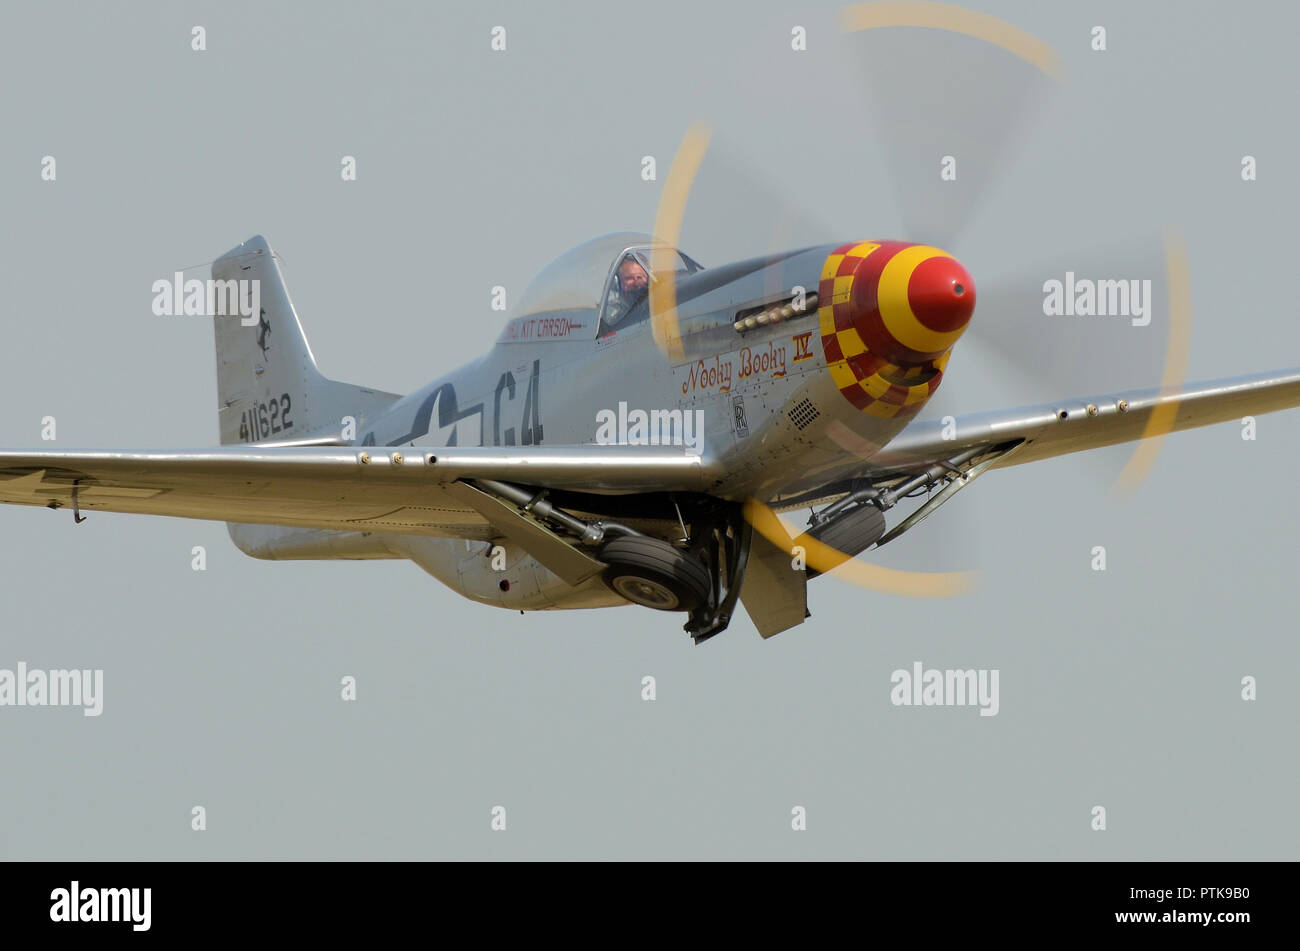 L'aereo da combattimento North American P-51D Mustang di nome Nooky Booky IV decolla per essere esposto ad un airshow. Ripiegamento delle ruote del sottocarro Foto Stock